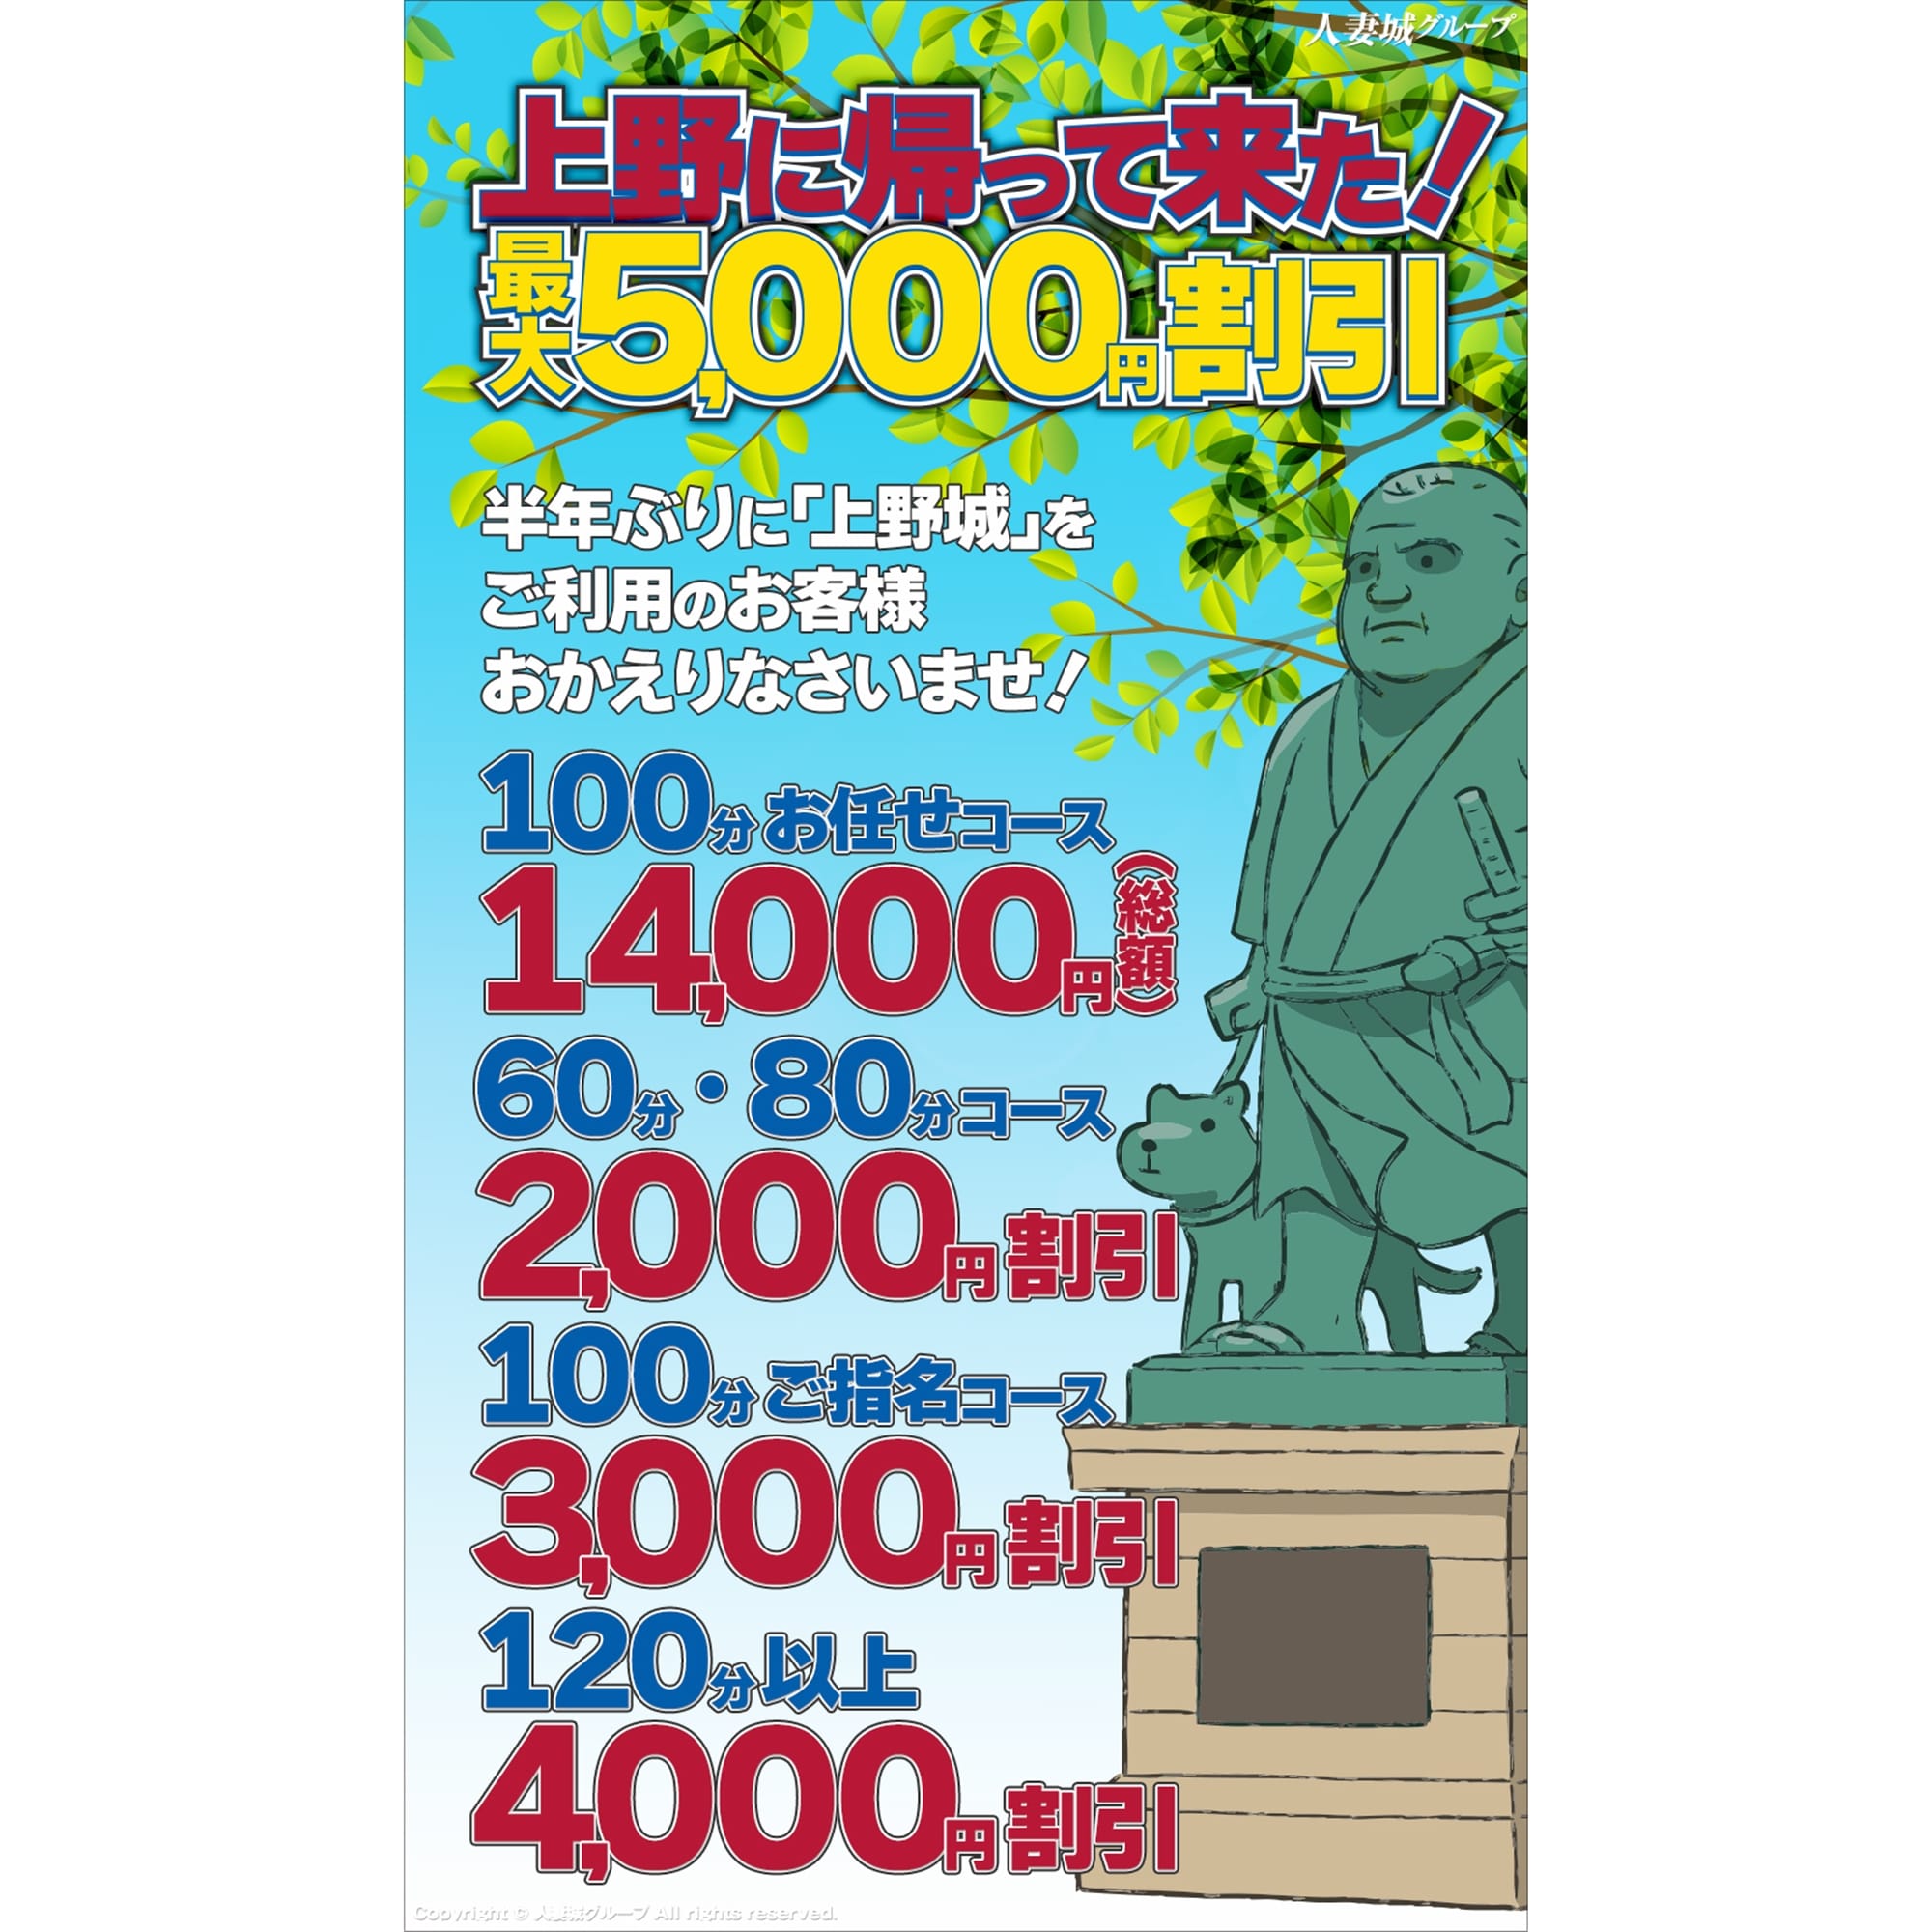 「上野に帰って来た!」04/25(木) 12:54 | 上野人妻城のお得なニュース